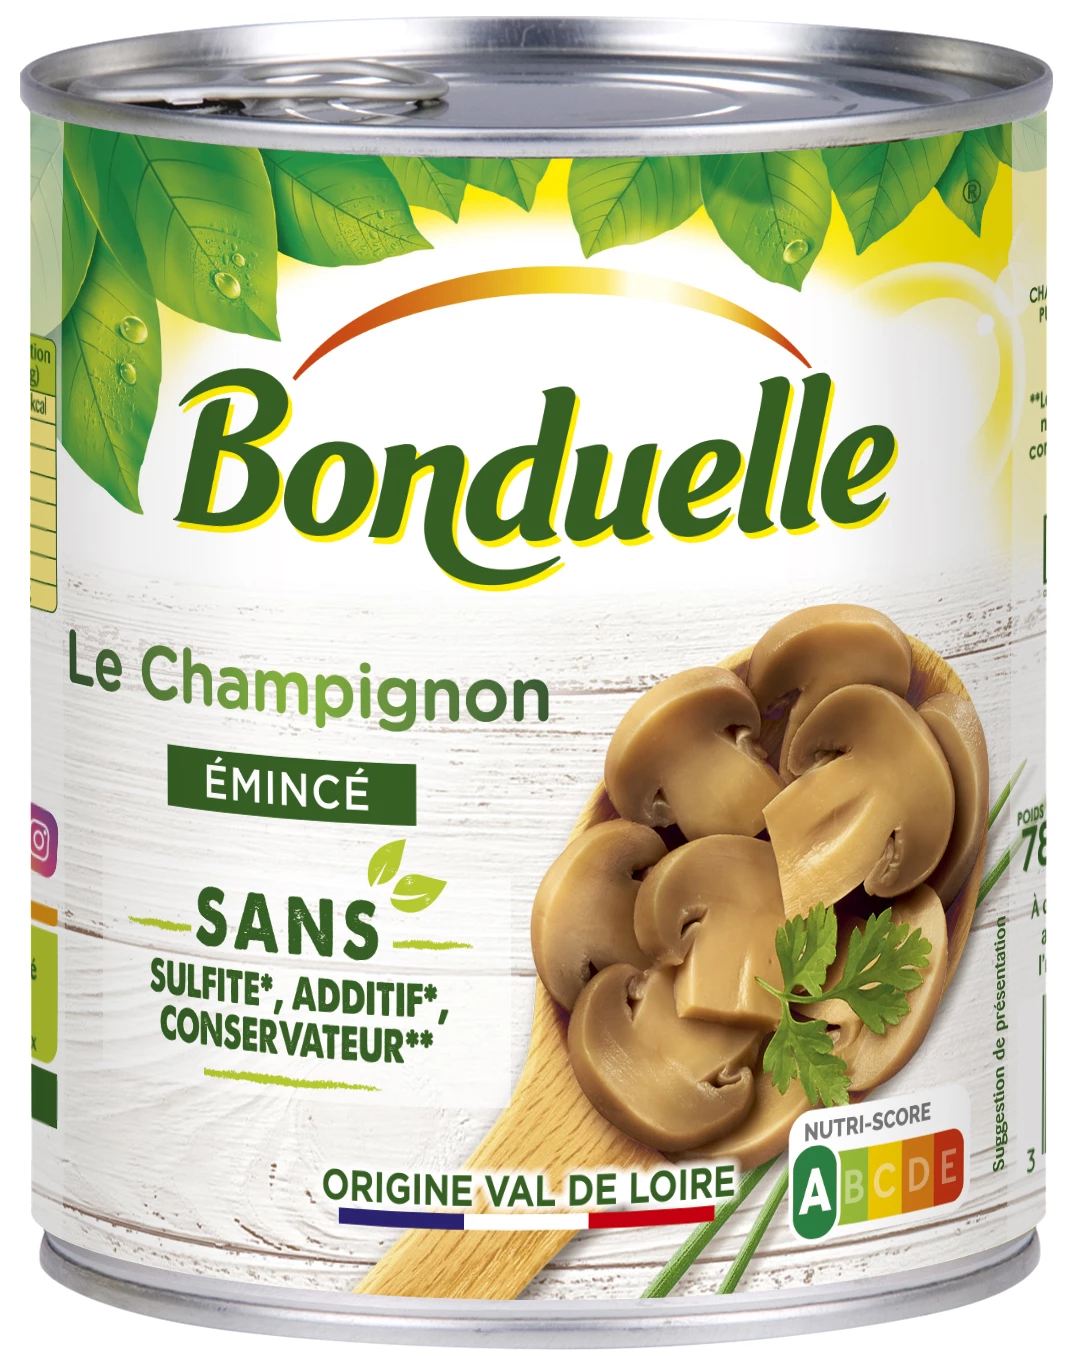 Geschnittene Champignons ohne Sulfit; Zusatzstoff und Konservierungsmittel - BONDUELLE